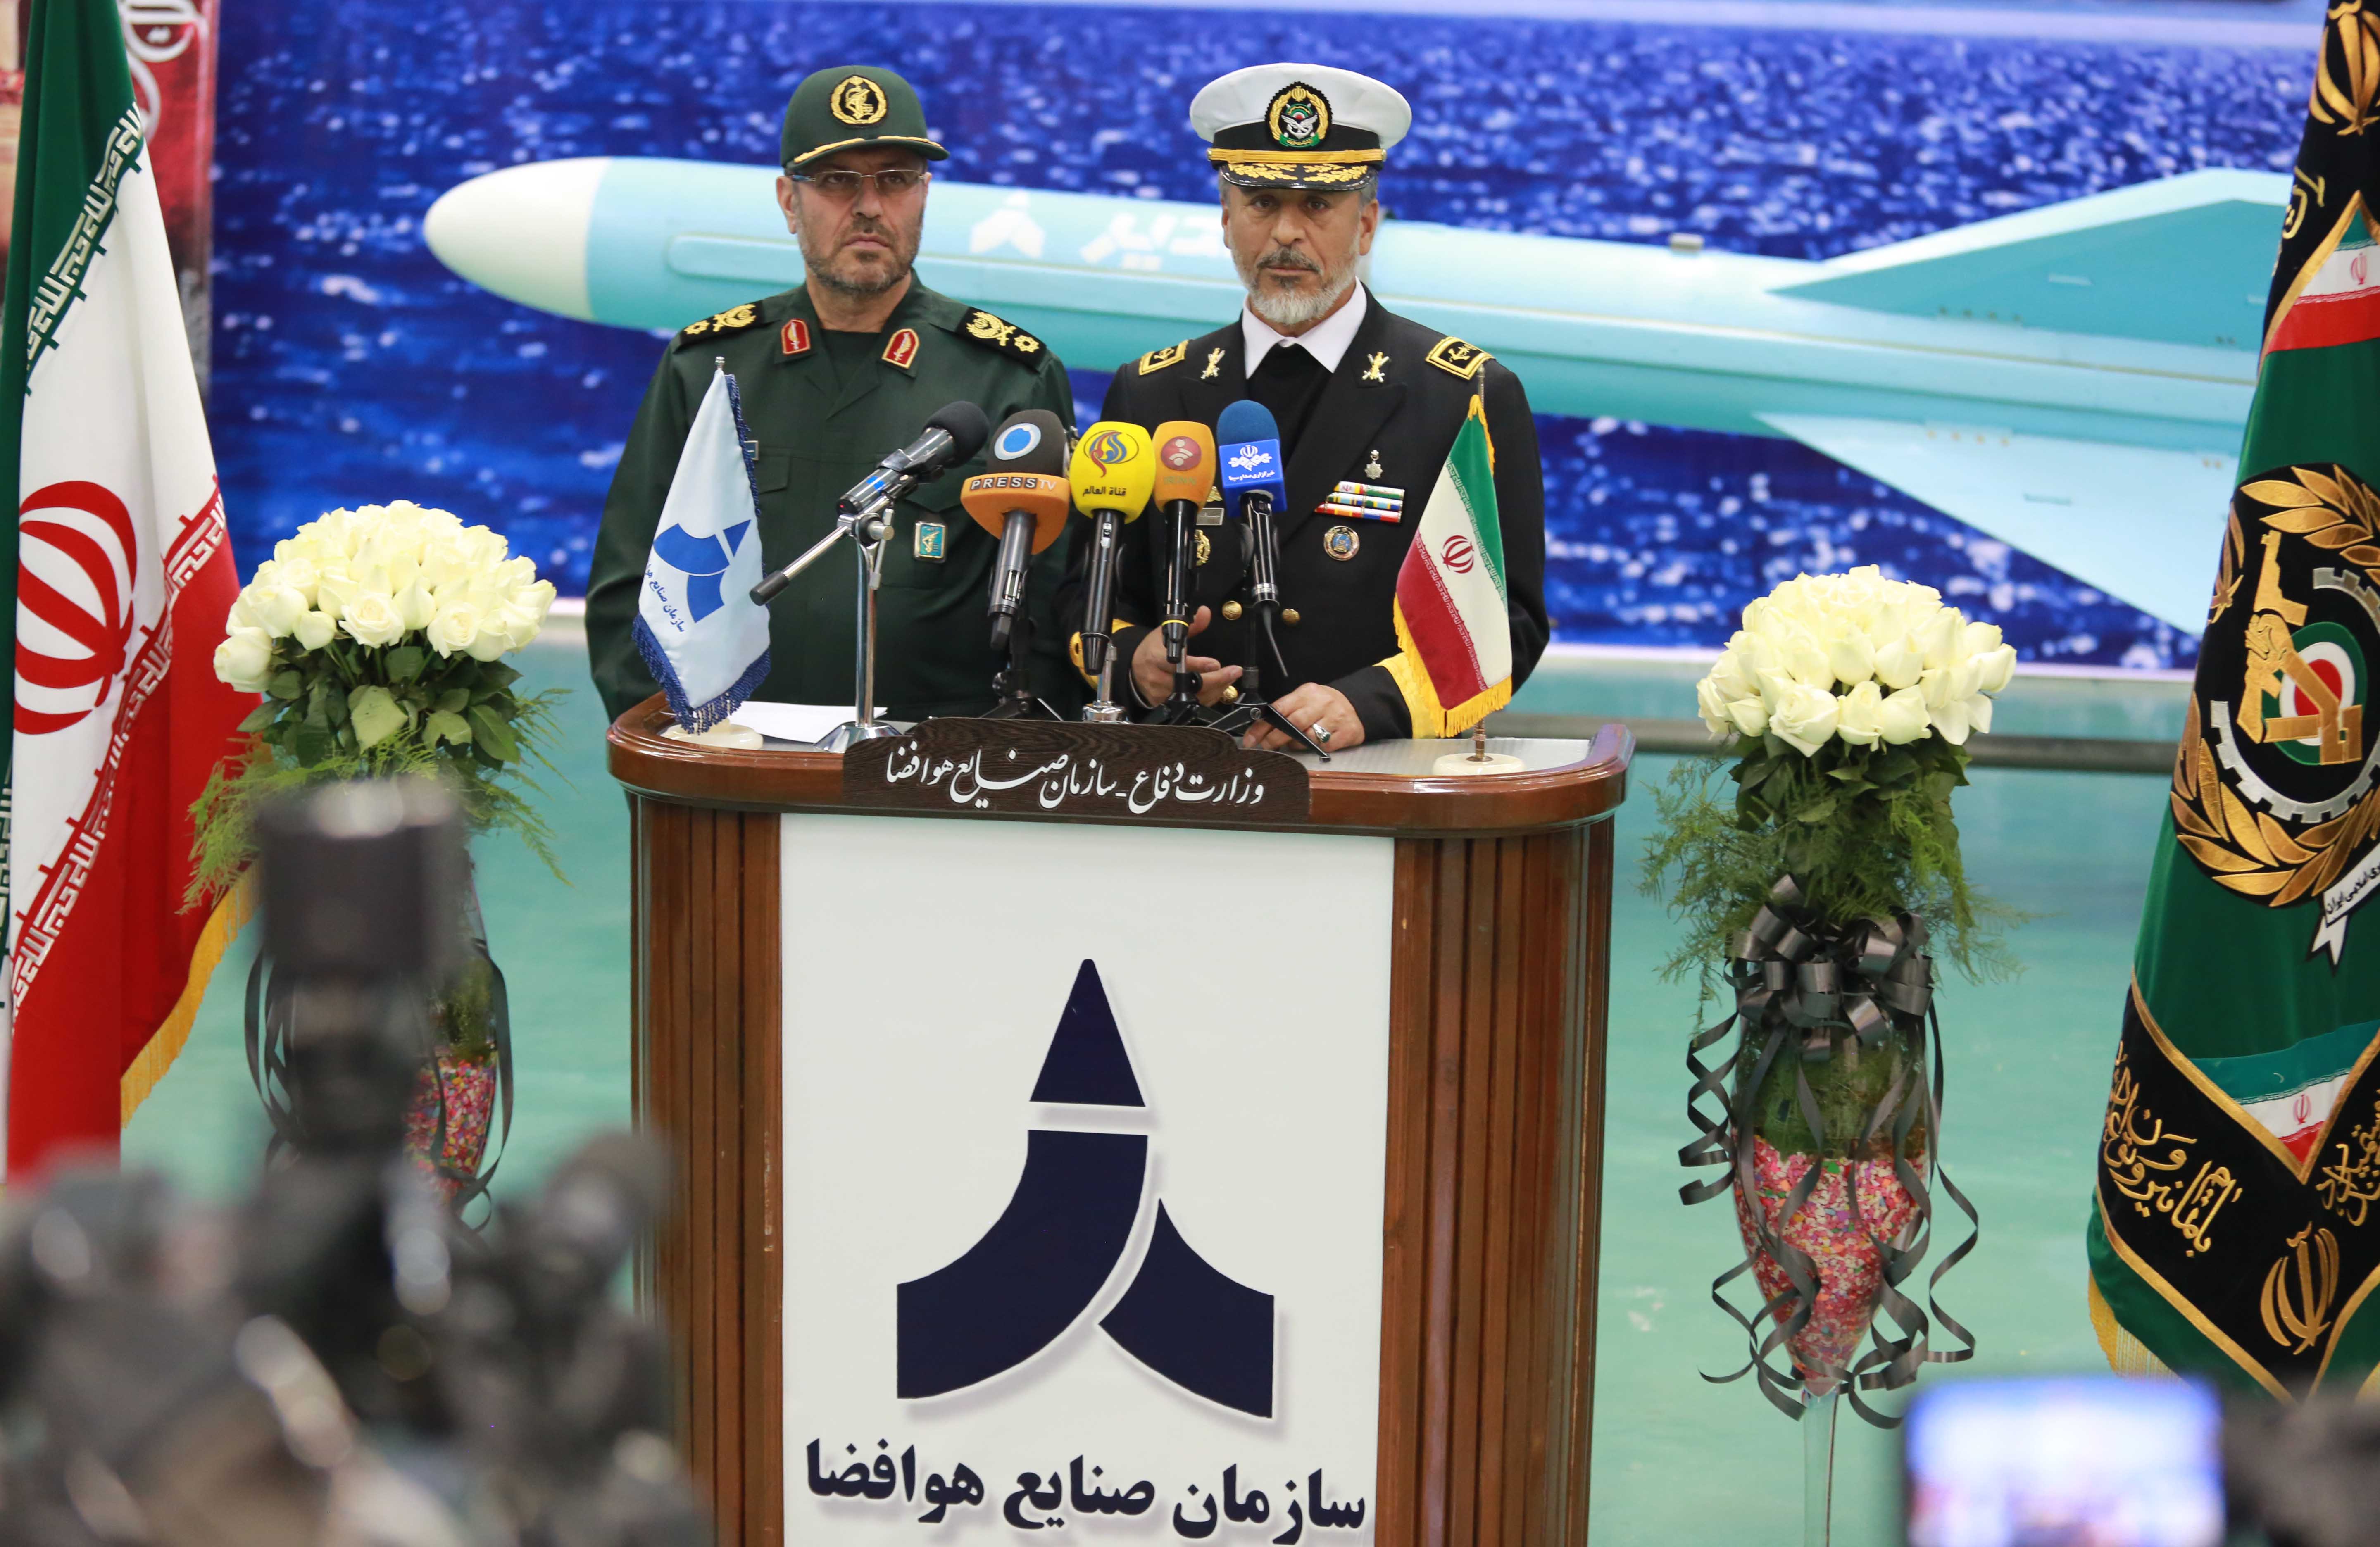 تجهیز نیروی دریایی راهبردی ارتش جمهوری اسلامی ایران به موشک کروز دریایی قدیر+تصاویر